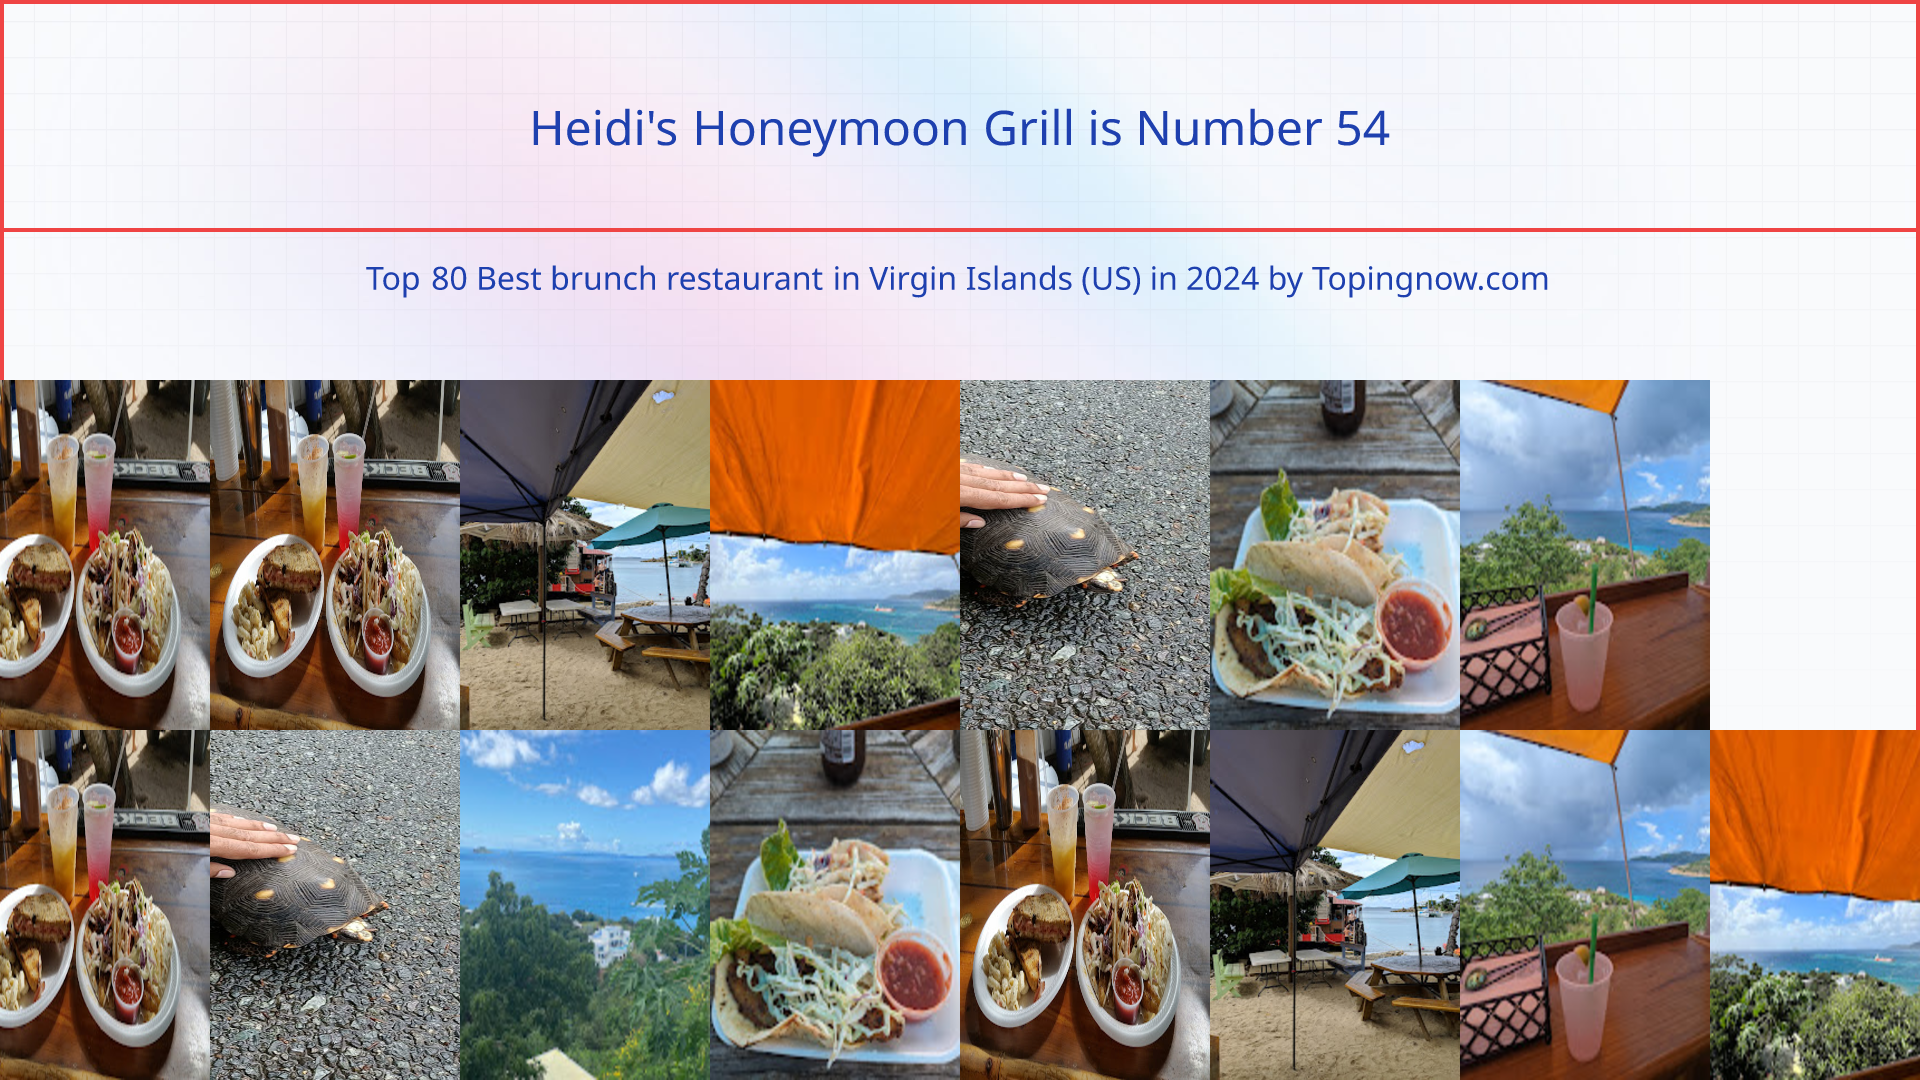 Heidi's Honeymoon Grill: Top 80 Best brunch restaurant in Virgin Islands (US) in 2024